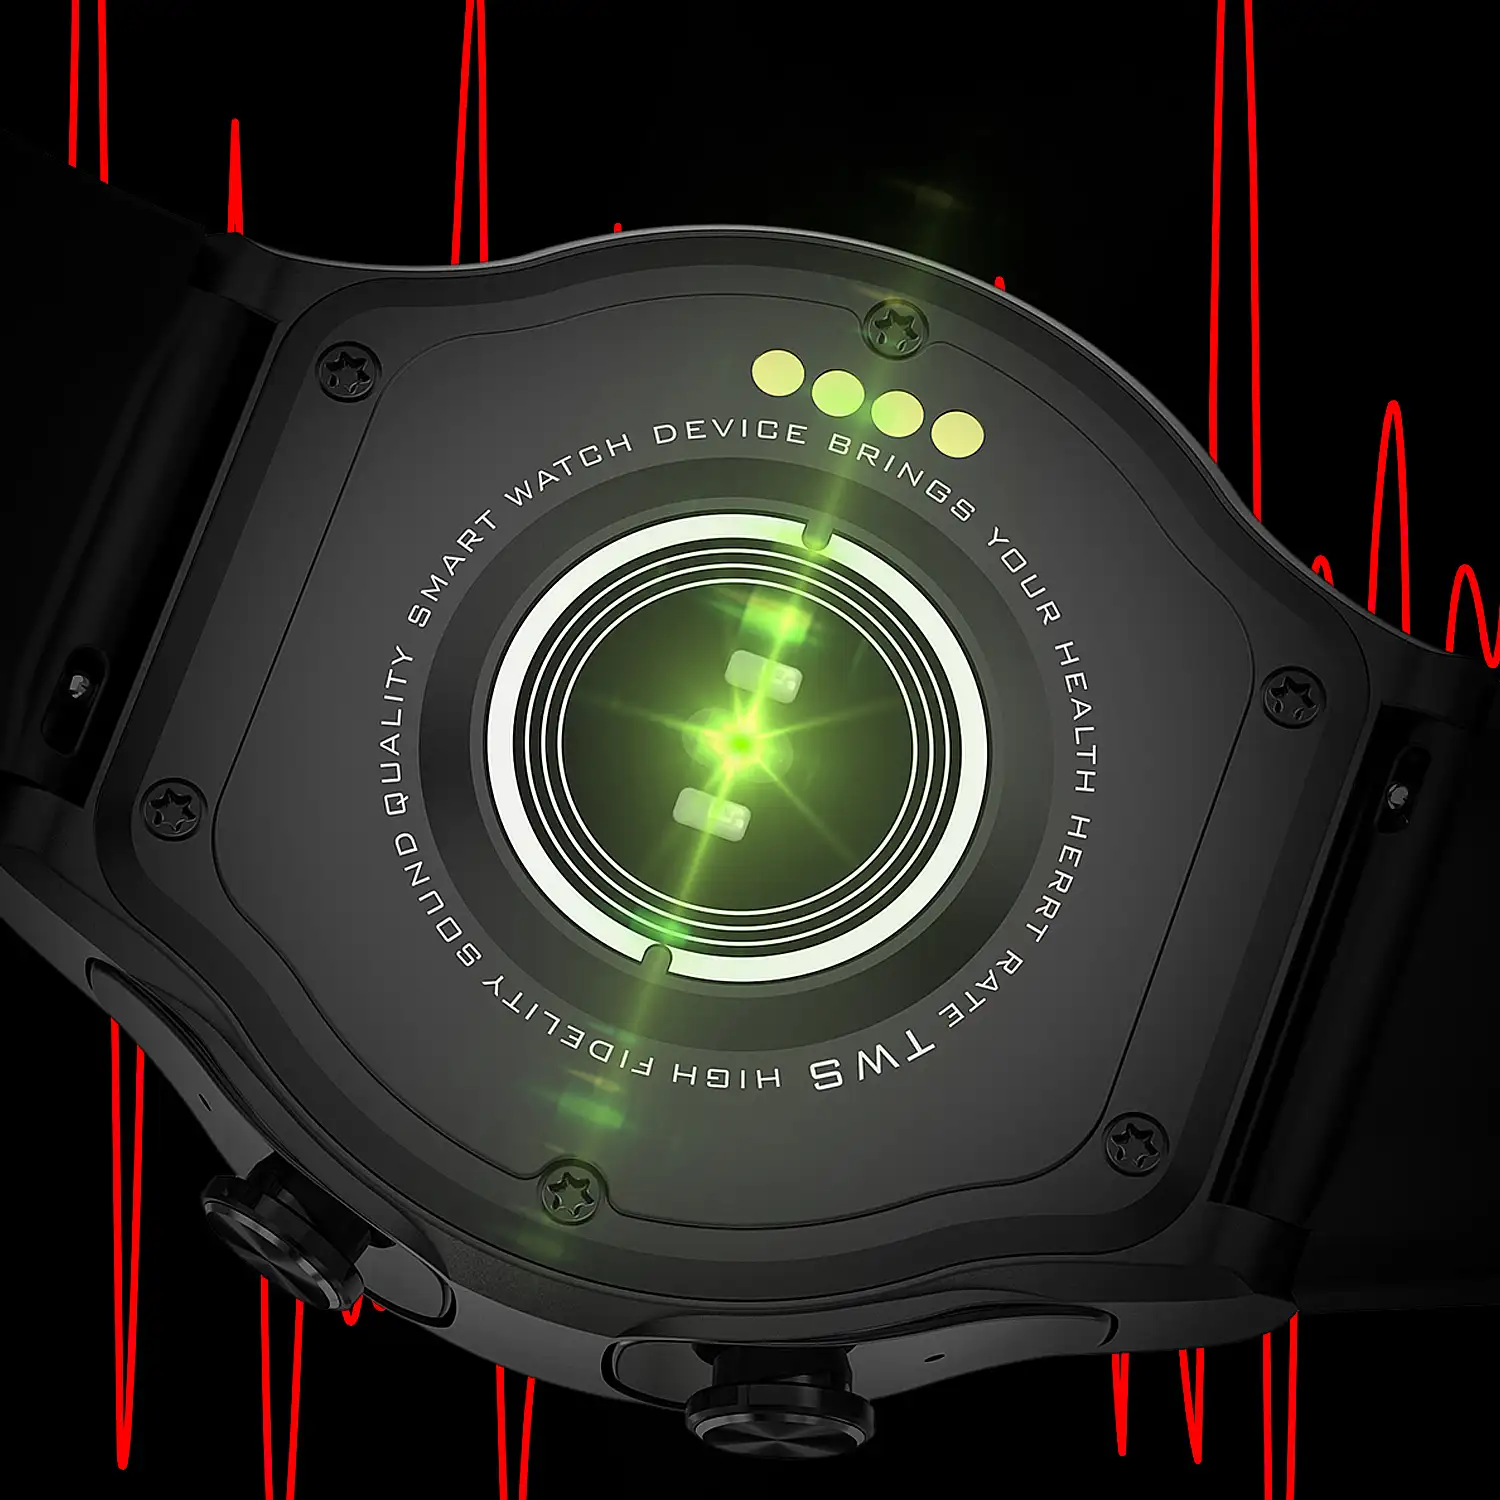 Smartwatch GT69 con auriculares Bluetooth 5.0 TWS integrados. Monitor de tensión y oxígeno en sangre; modo multideportivo.